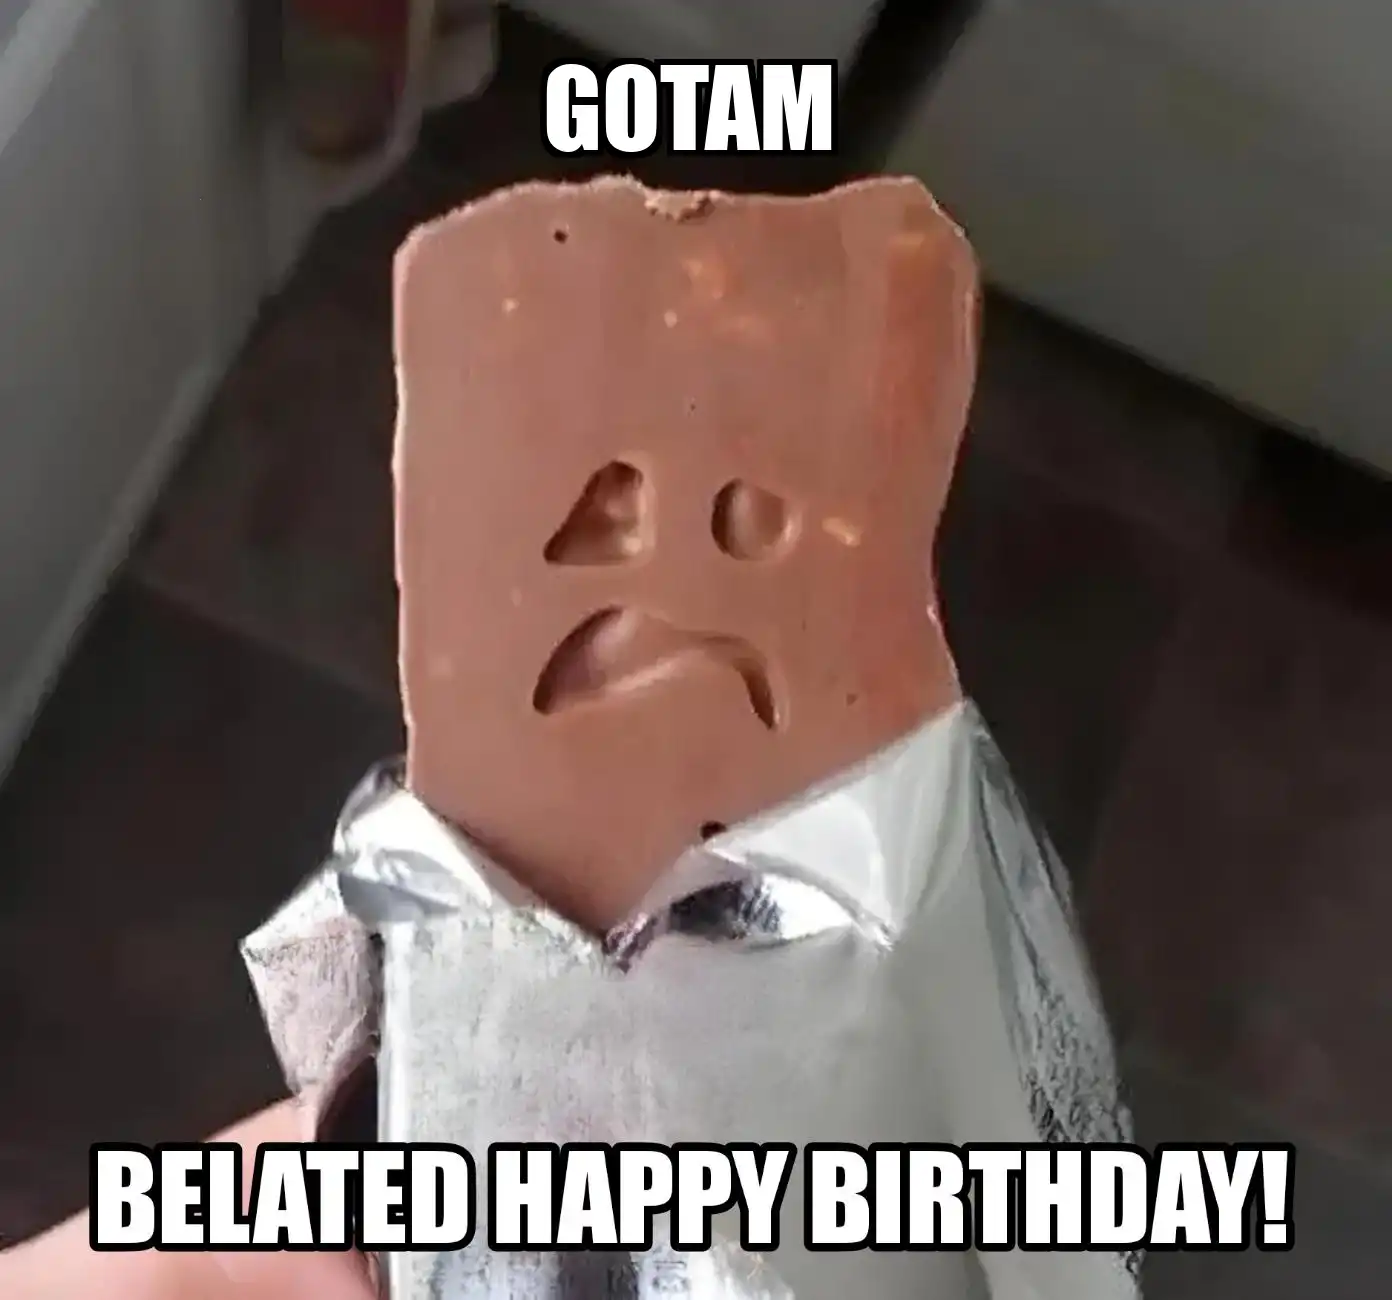 Happy Birthday Gotam Belated Happy Birthday Meme